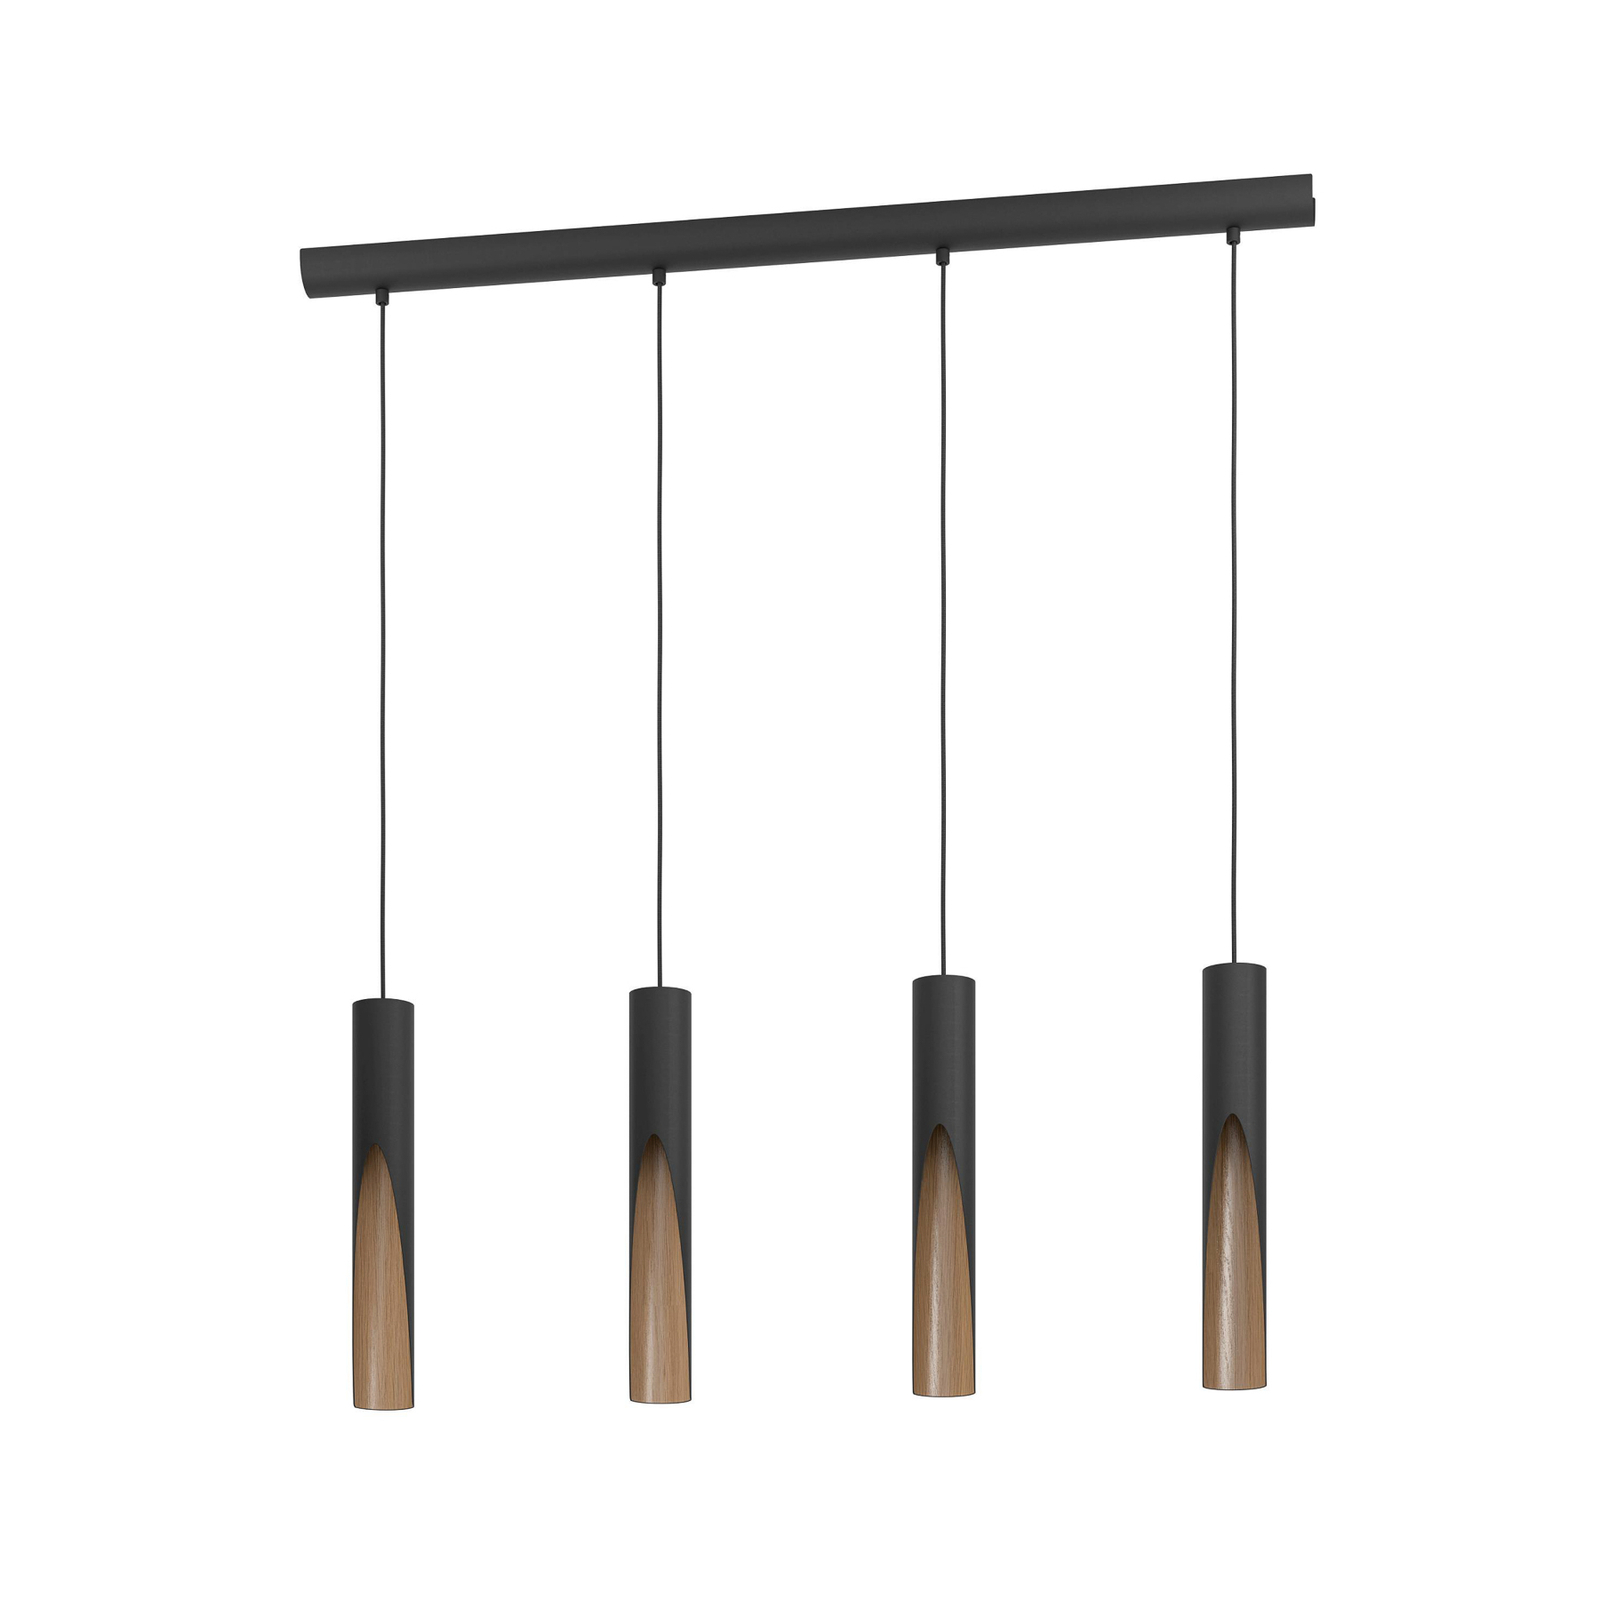 LED hanglamp Barbotto in zwart/eiken, 4-lamp